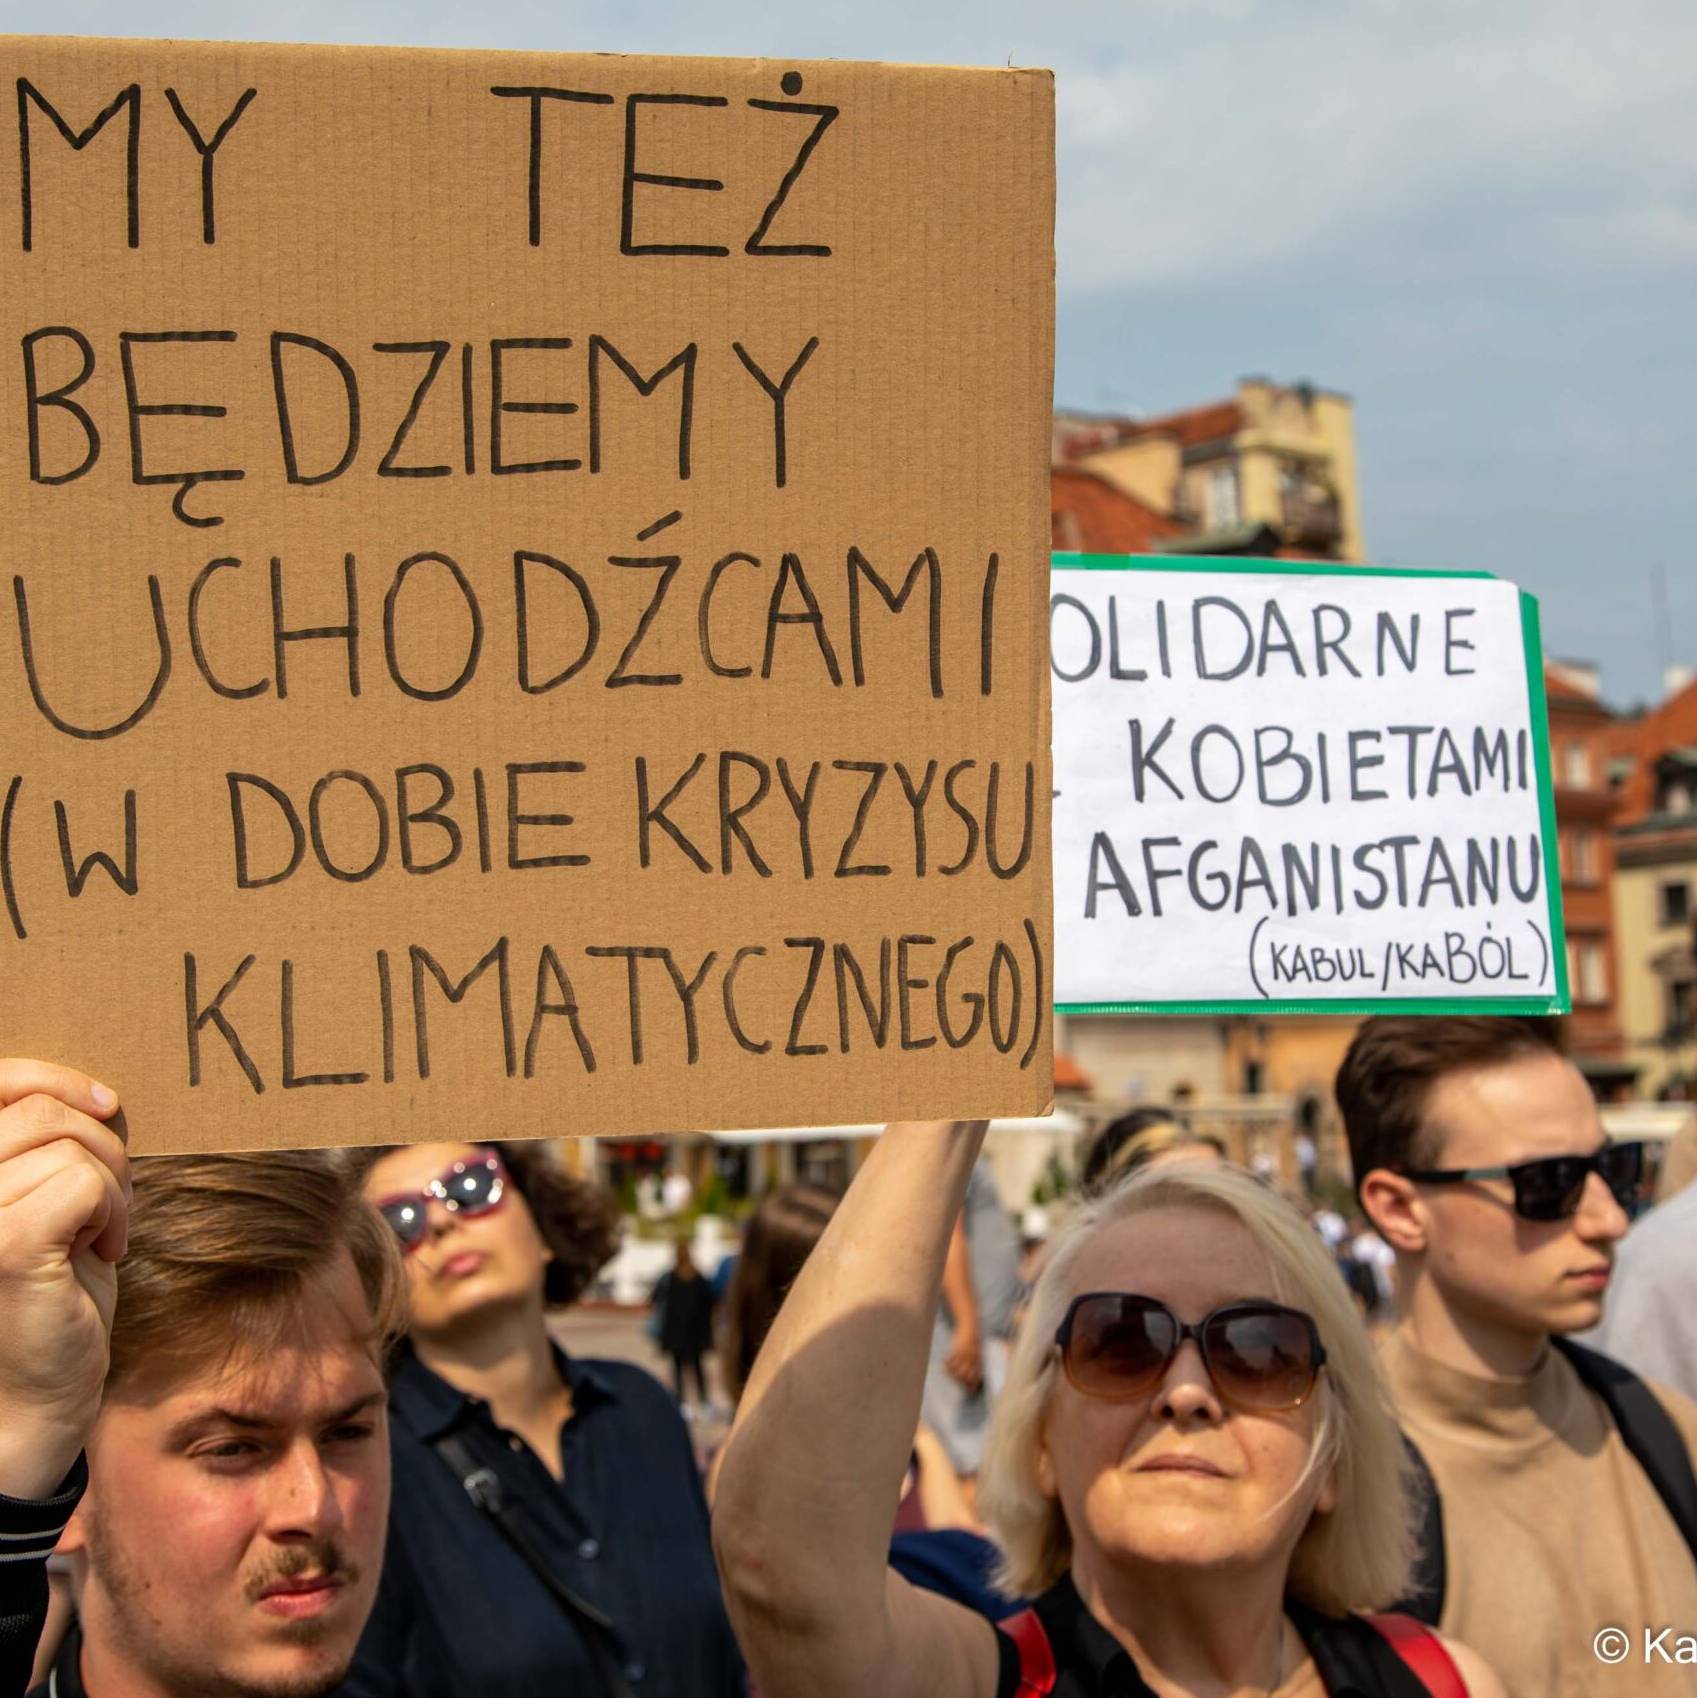 Warszawa, 22.08.2021. Kabul/Kaból – protest Strajku Kobiet w solidarności z zagrożonymi Afgankami i Afgańczykami